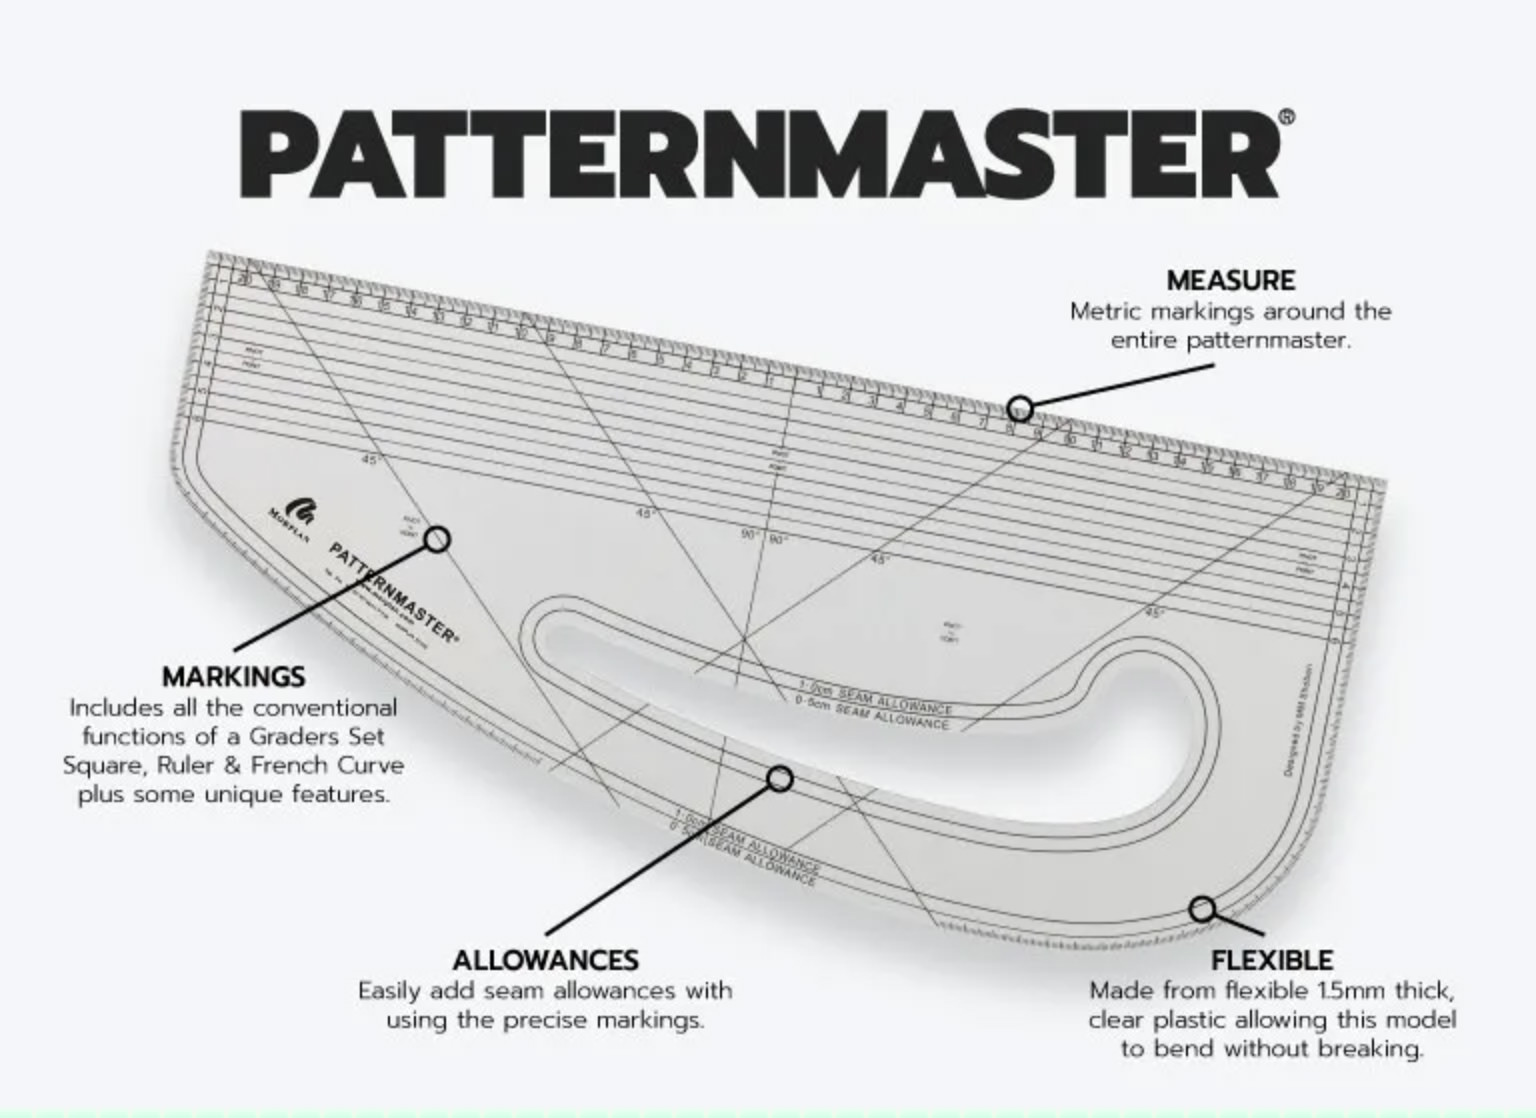 Patternmaster - Metric